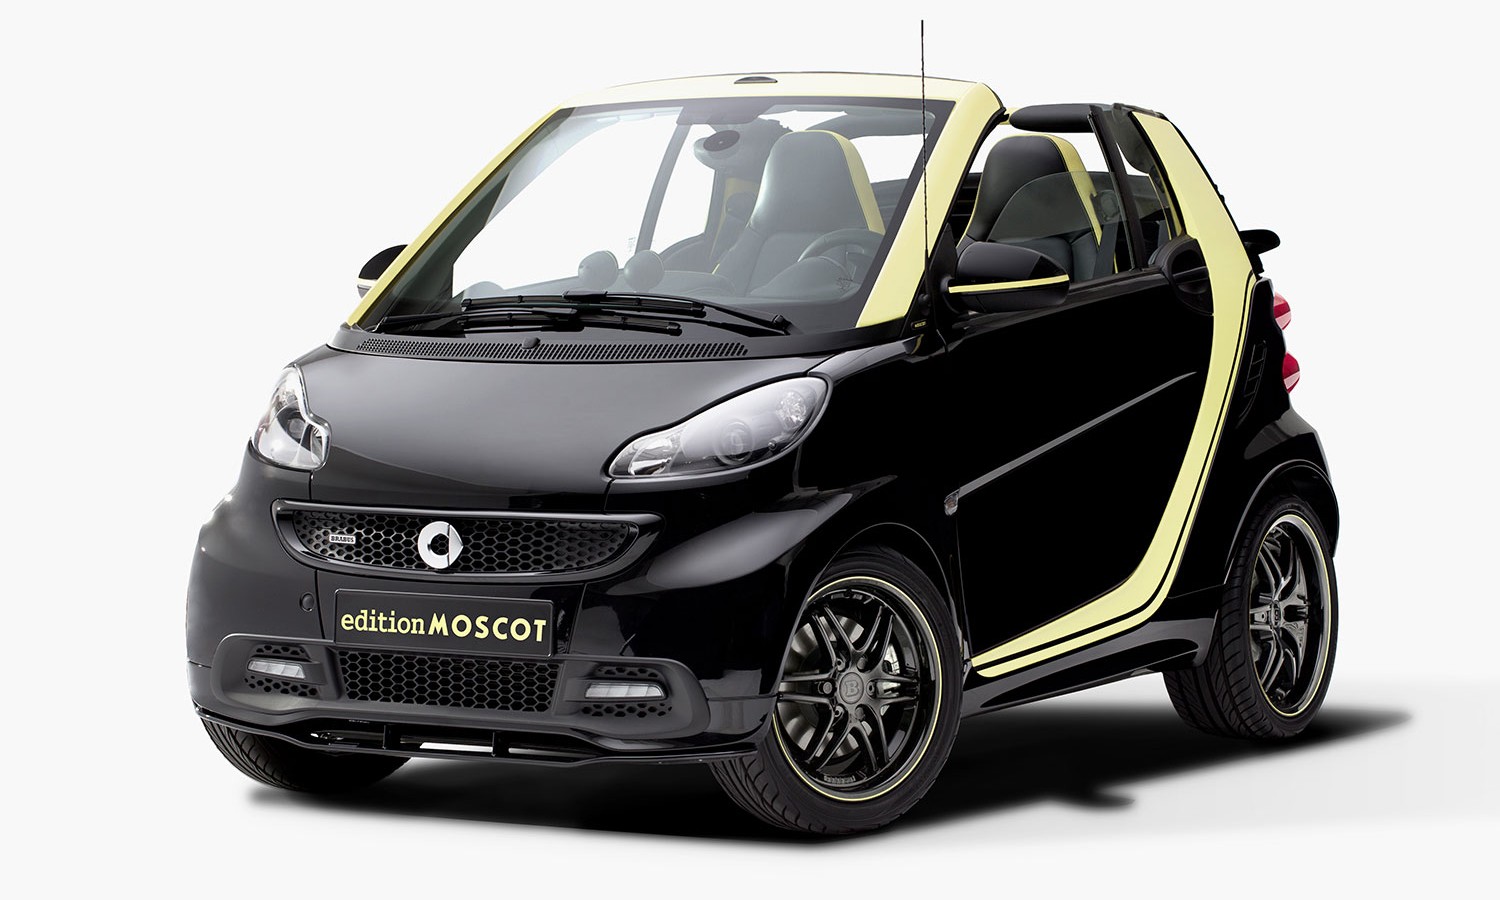 Smart ForTwo Cabrio edition MOSCOT 纪念车款发布